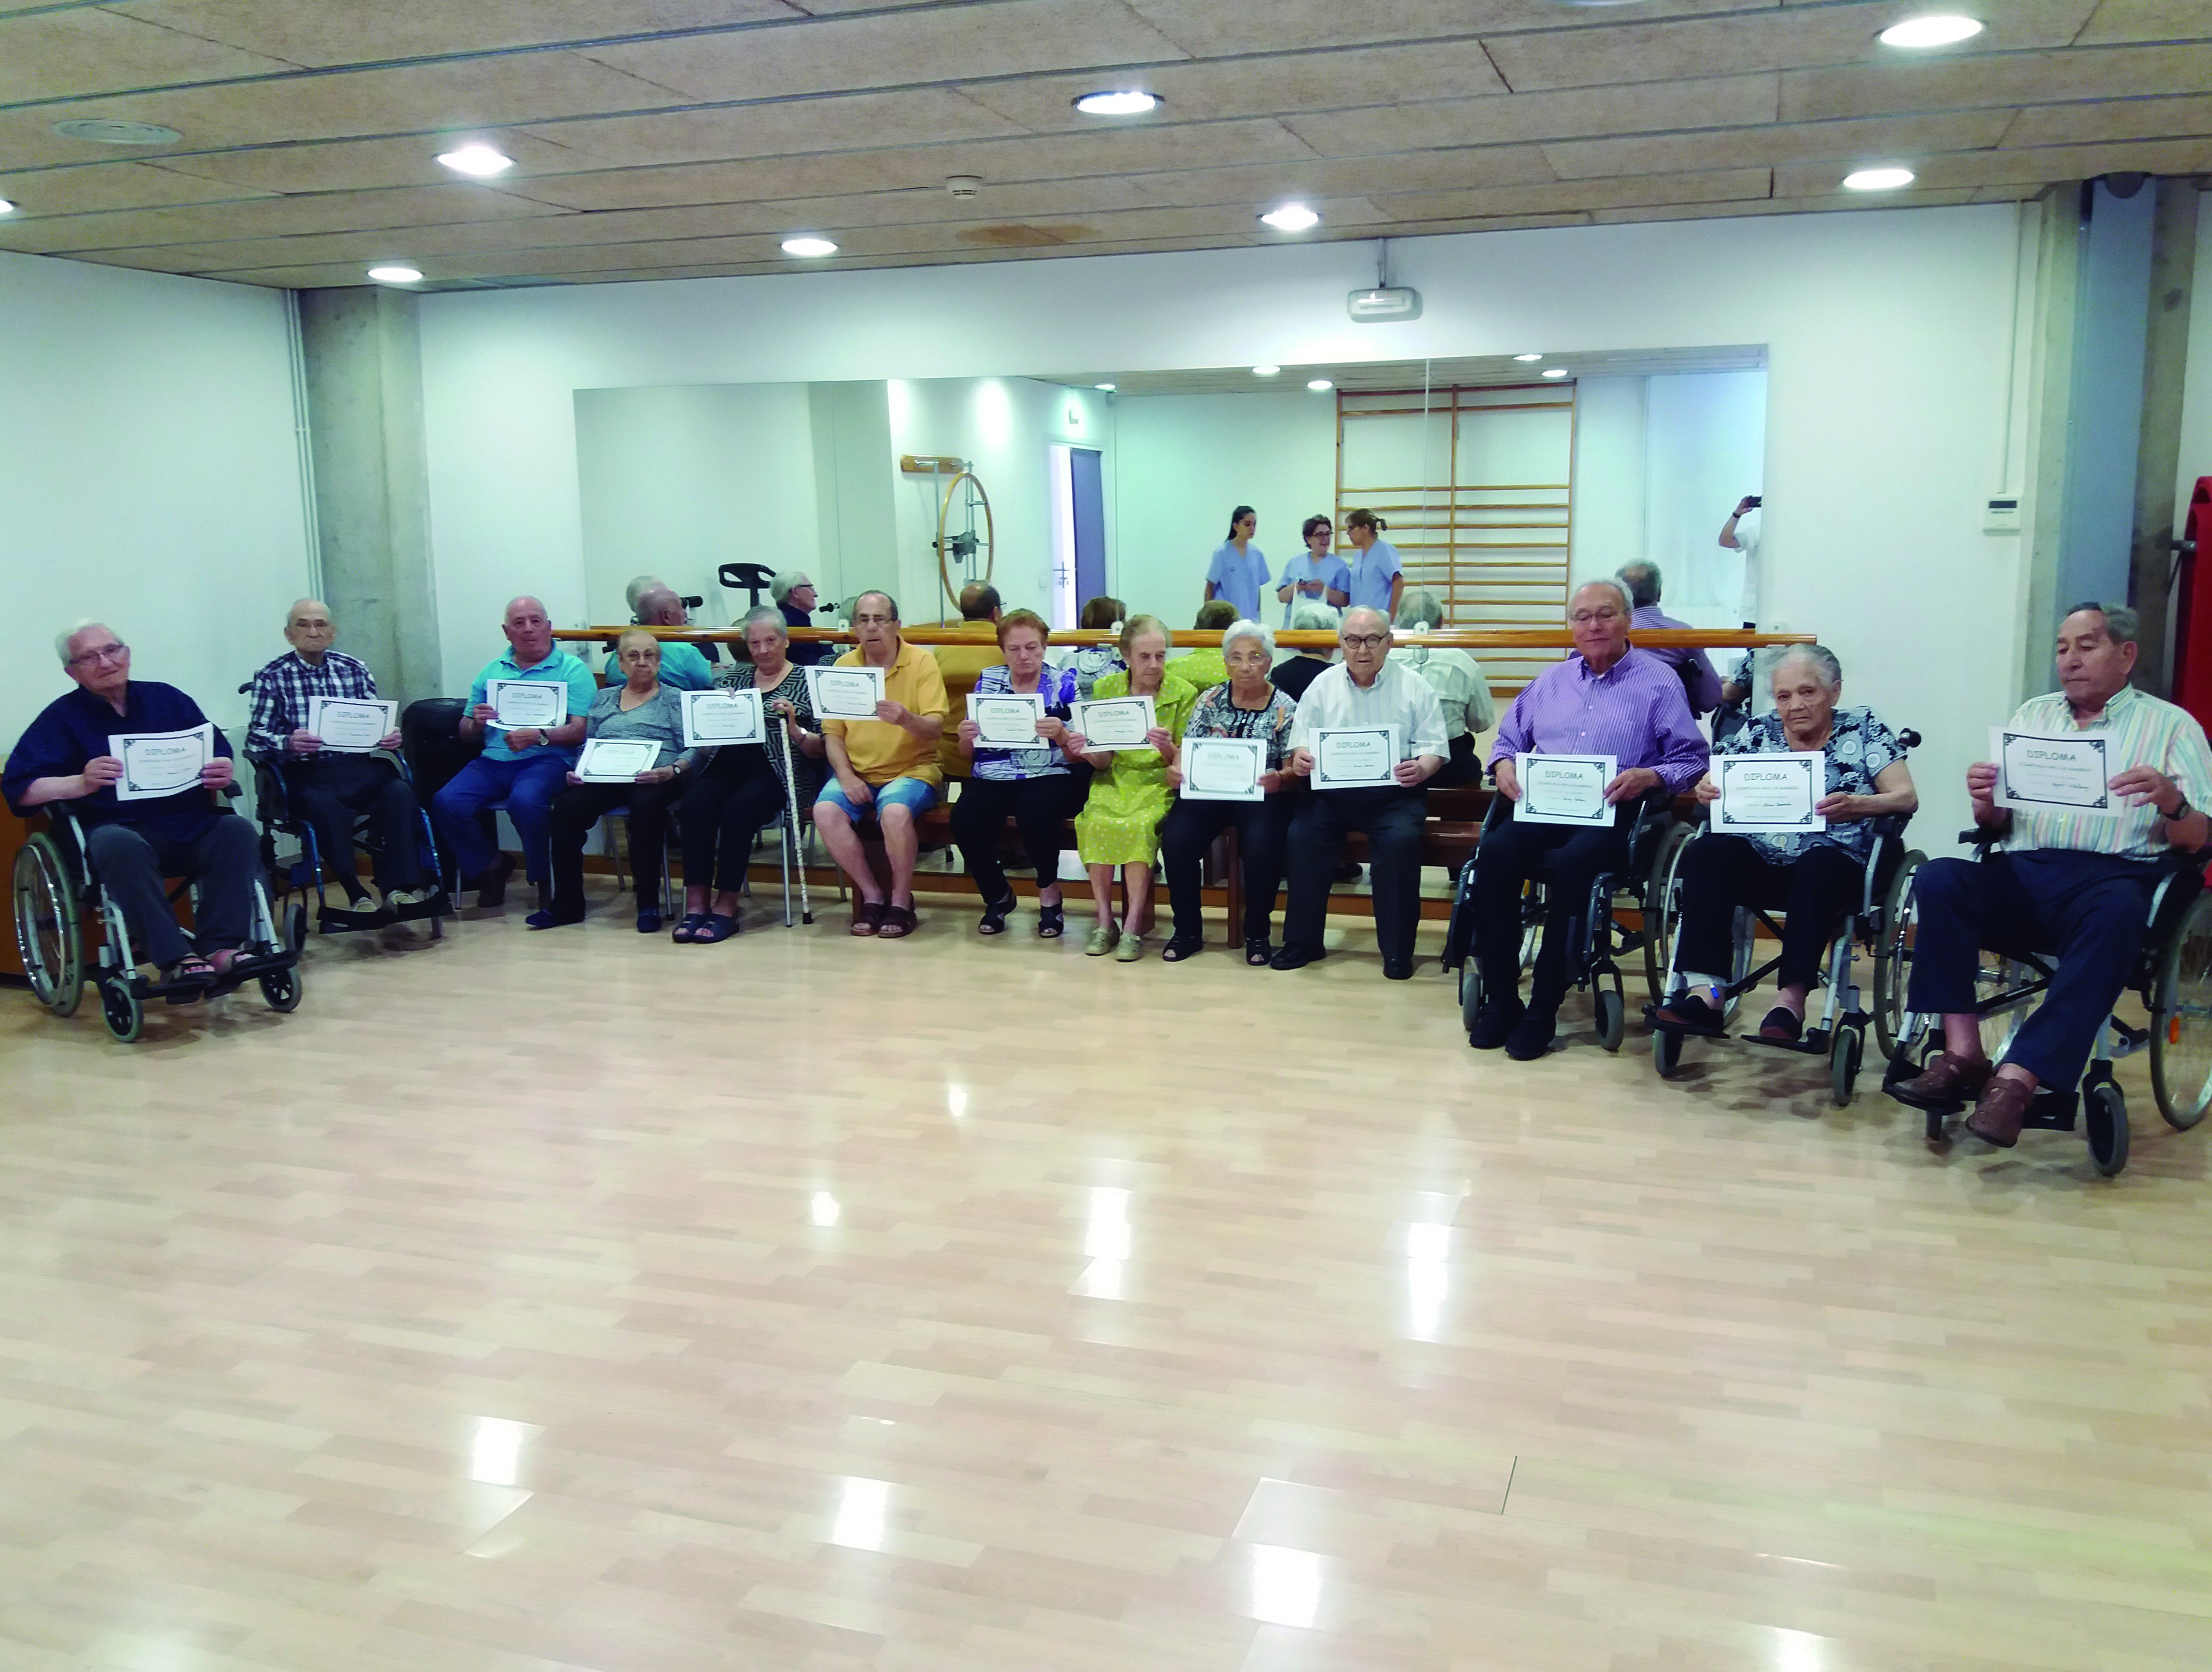 Centres de dia per a gent gran Sabadell, El Centre de Dia Creu de Barberà organitza una refrescant Olimpíada